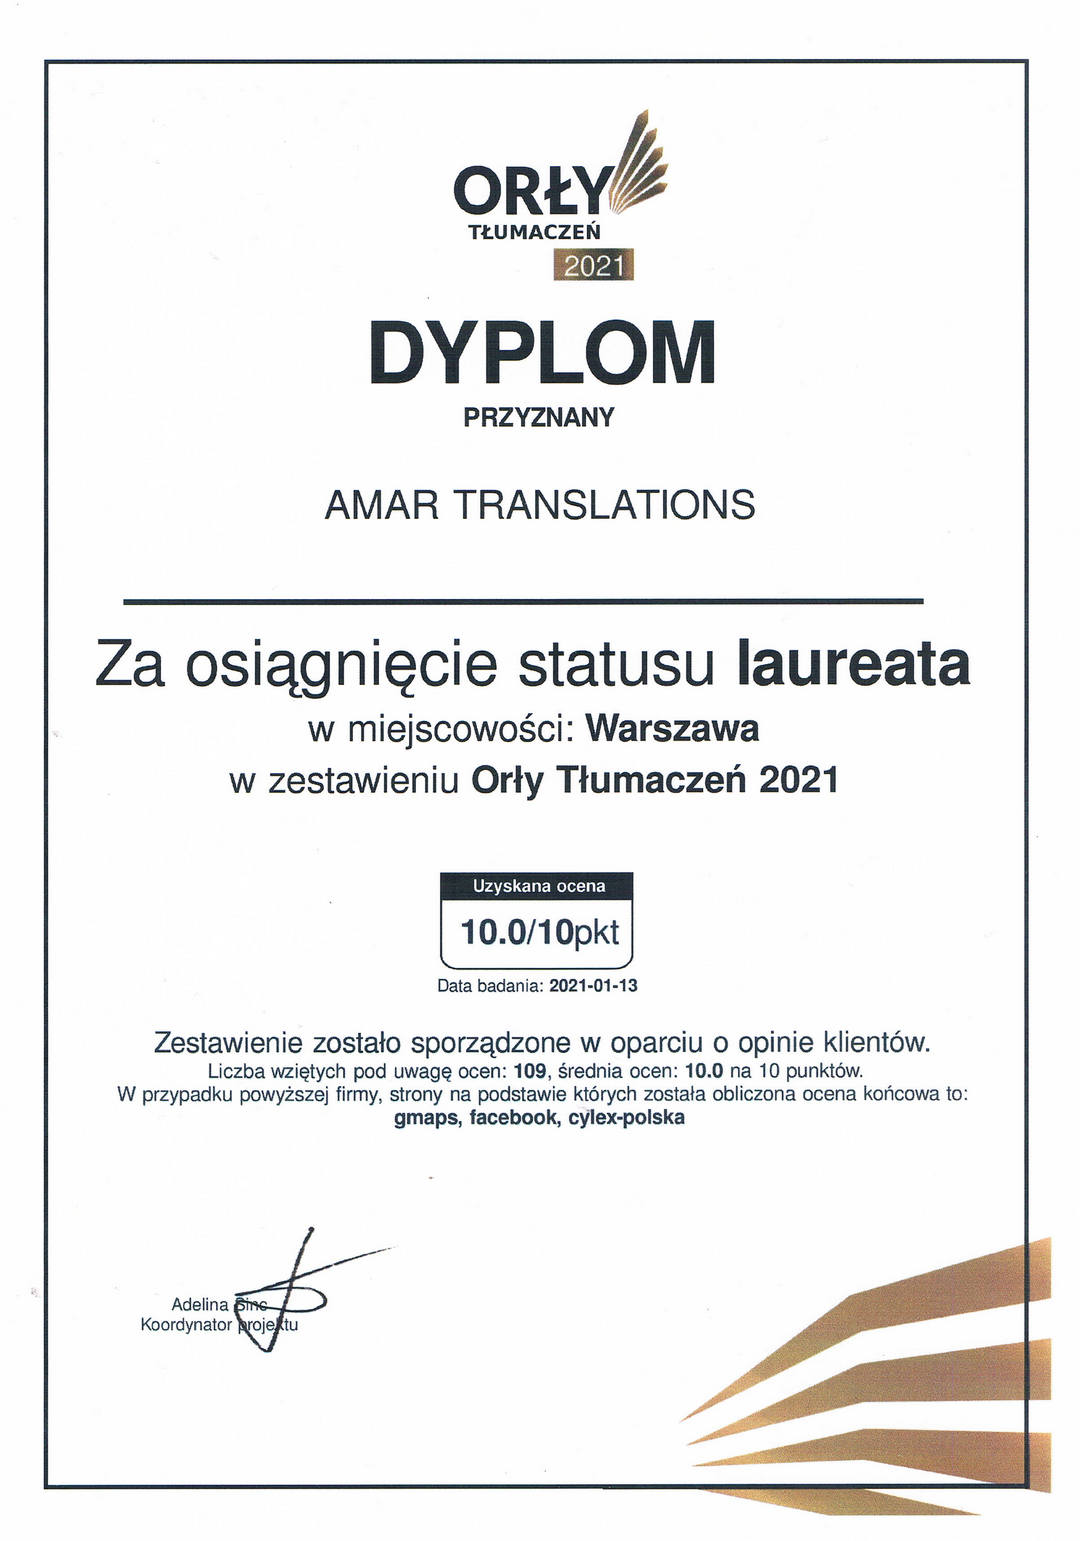 BiuroTlumaczenPrzysielychWarszawaAmaR-TRANSLATIONS-dyplom1